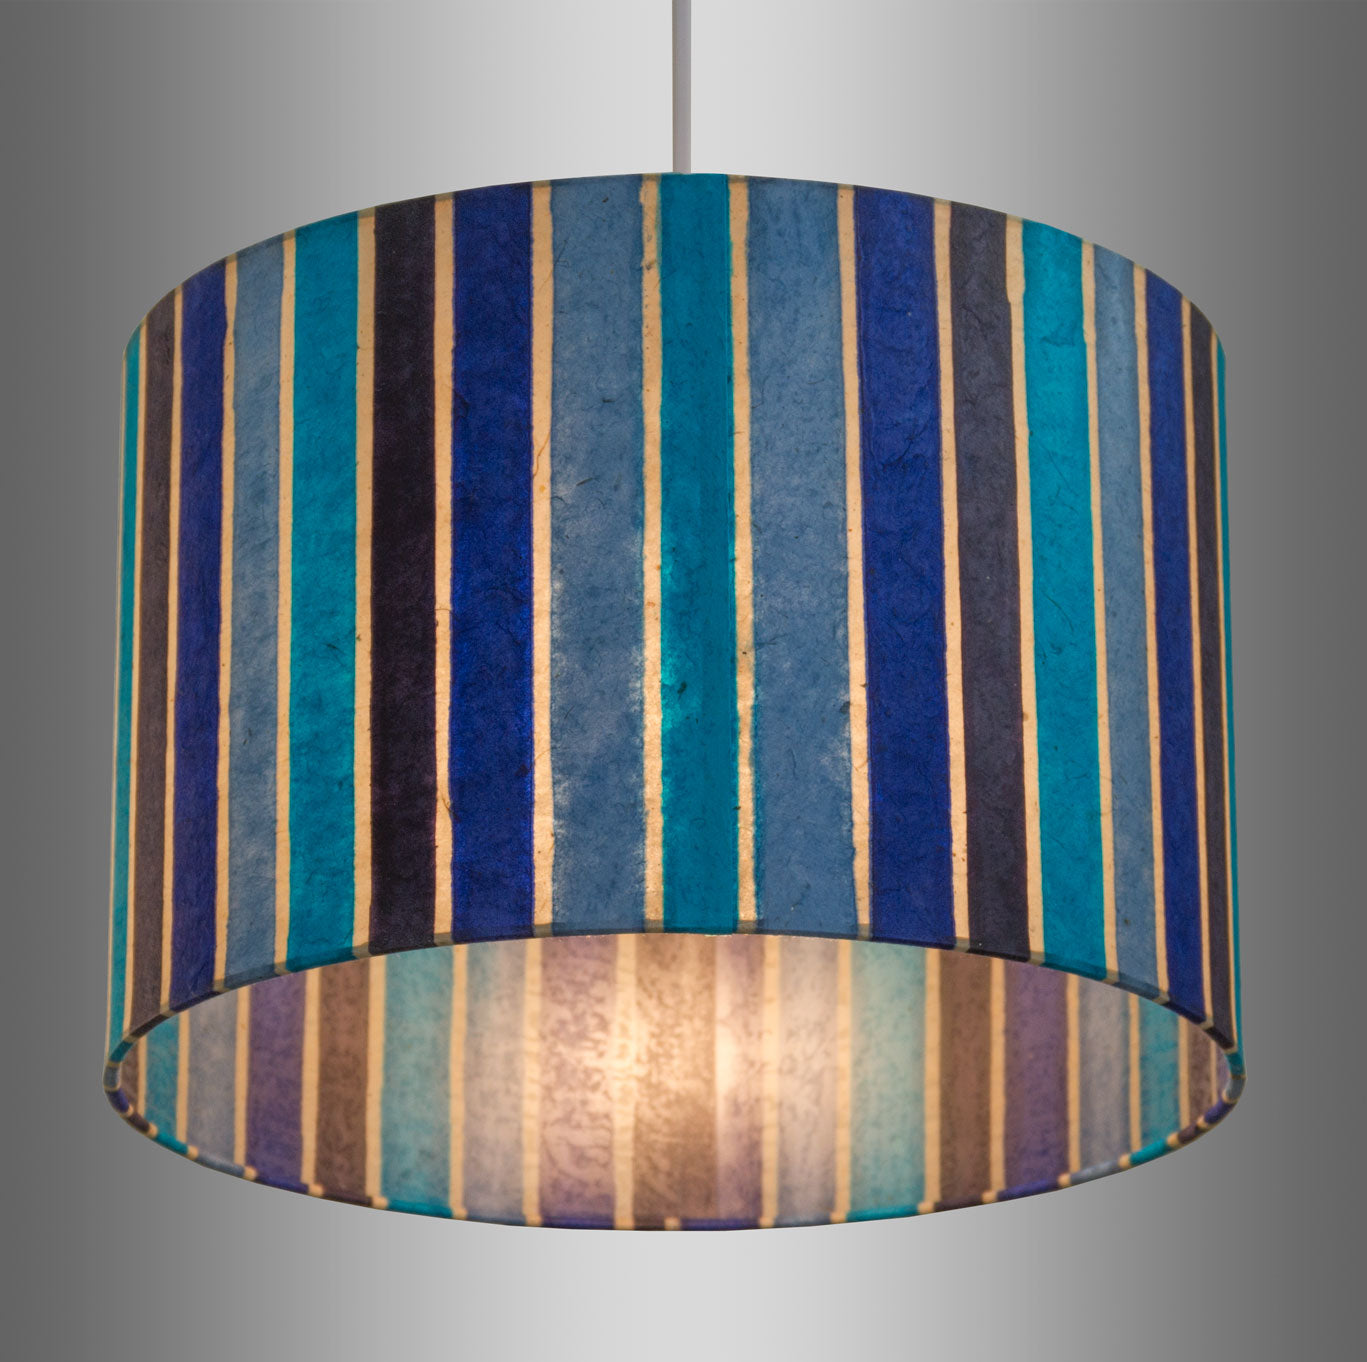 Drum Lamp Shade - P05 - Batik Stripes Blue, 50cm(d) x 25cm(h)